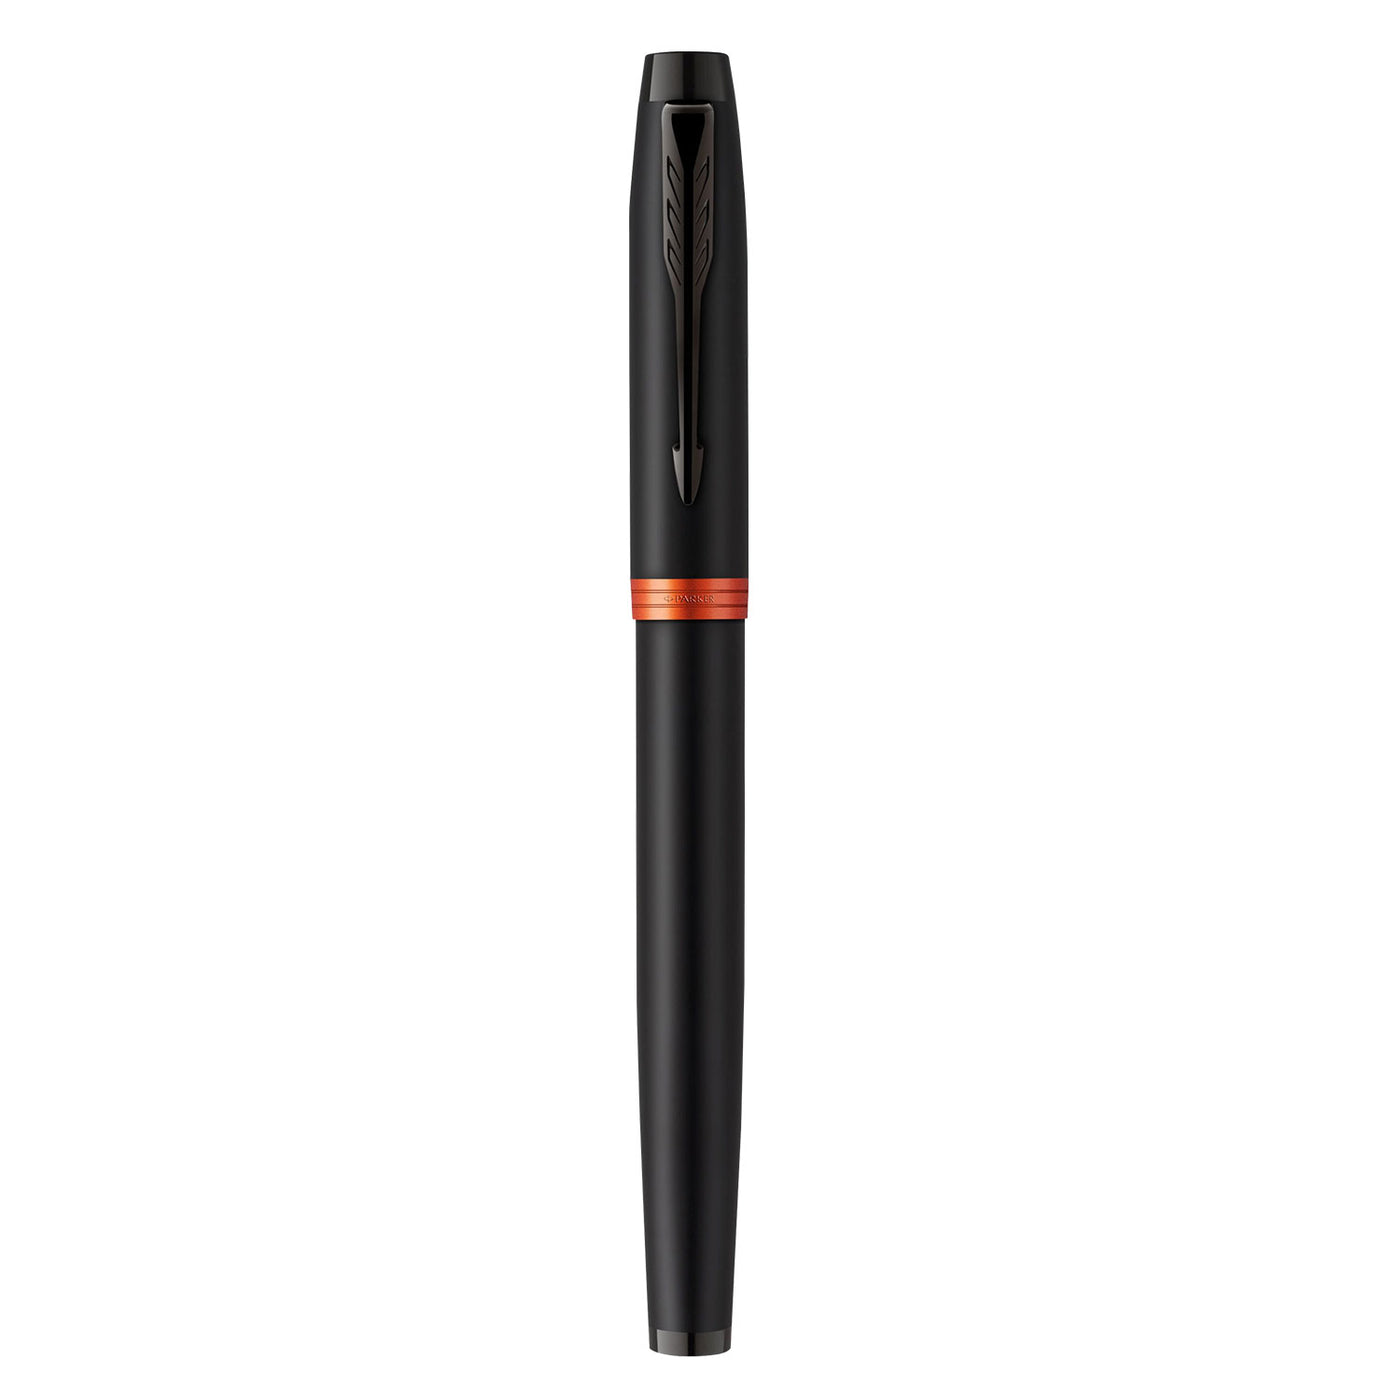 Parker IM Vibrant Rings Fountain Pen - Flame Orange Black BT 6